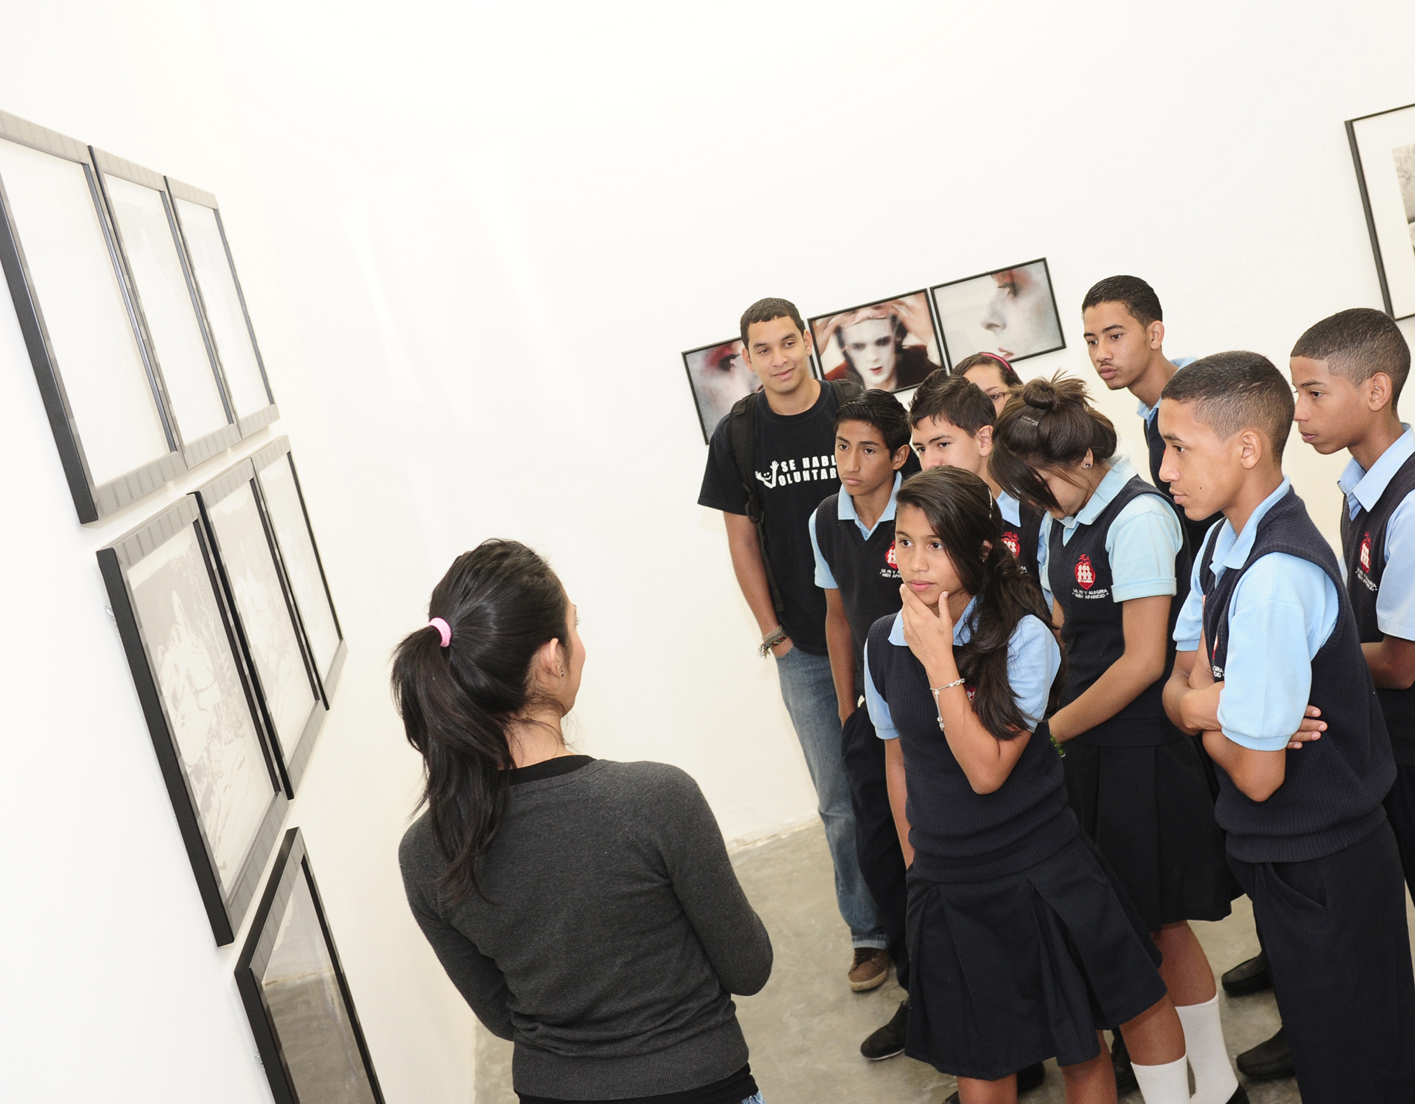 La exposición dedicada a la Colección de Fotografía Contemporánea de Telefónica ha sido catalogada por algunos especialistas como una de las mejores muestras de arte expuestas en Venezuela.